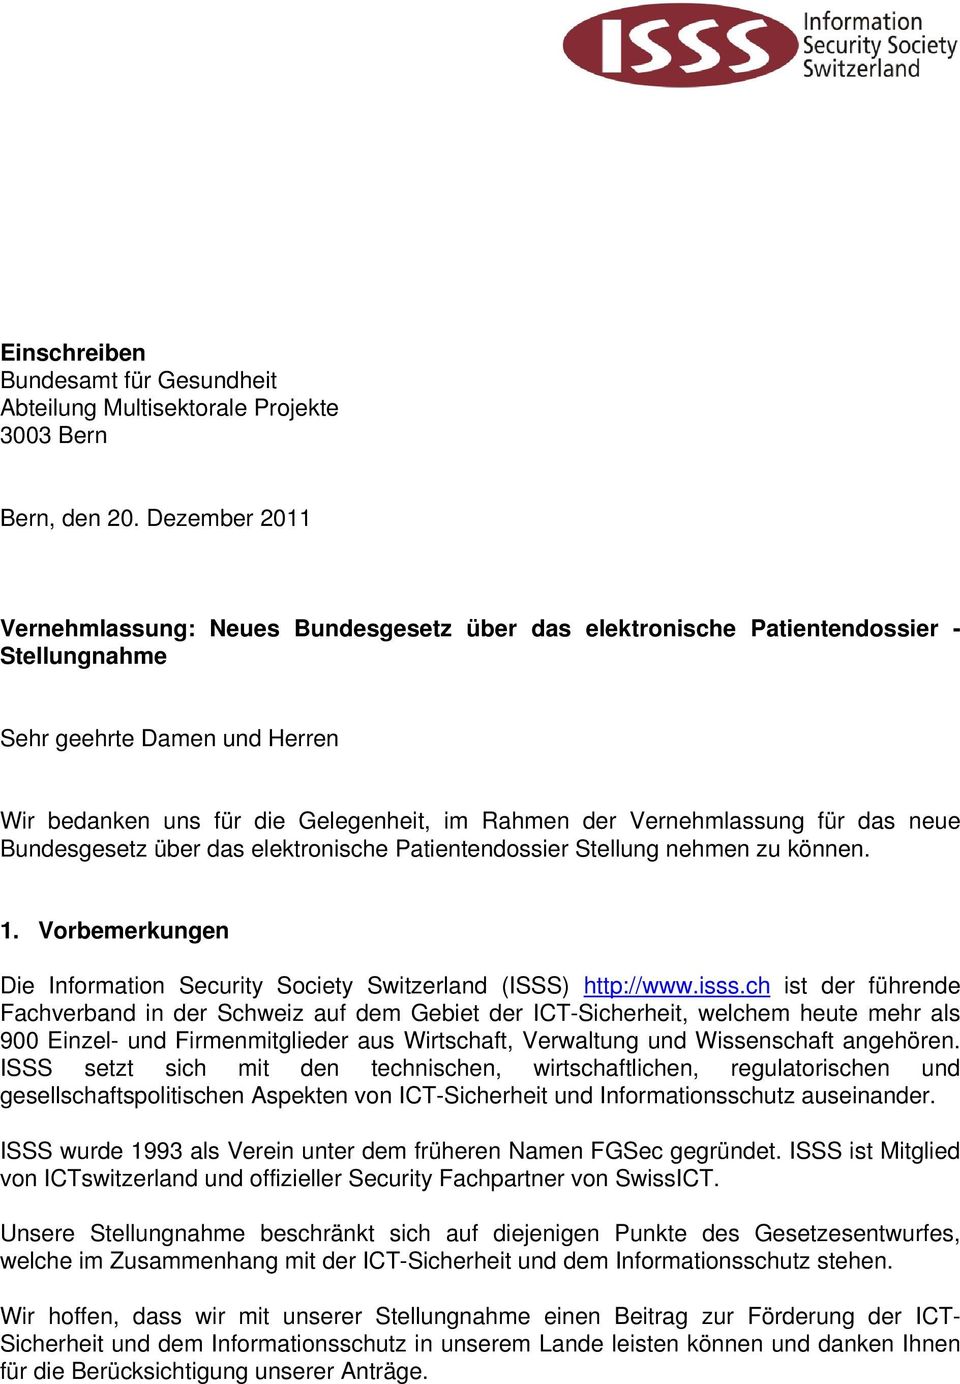 Vernehmlassung für das neue Bundesgesetz über das elektronische Patientendossier Stellung nehmen zu können. 1. Vorbemerkungen Die Information Security Society Switzerland (ISSS) http://www.isss.